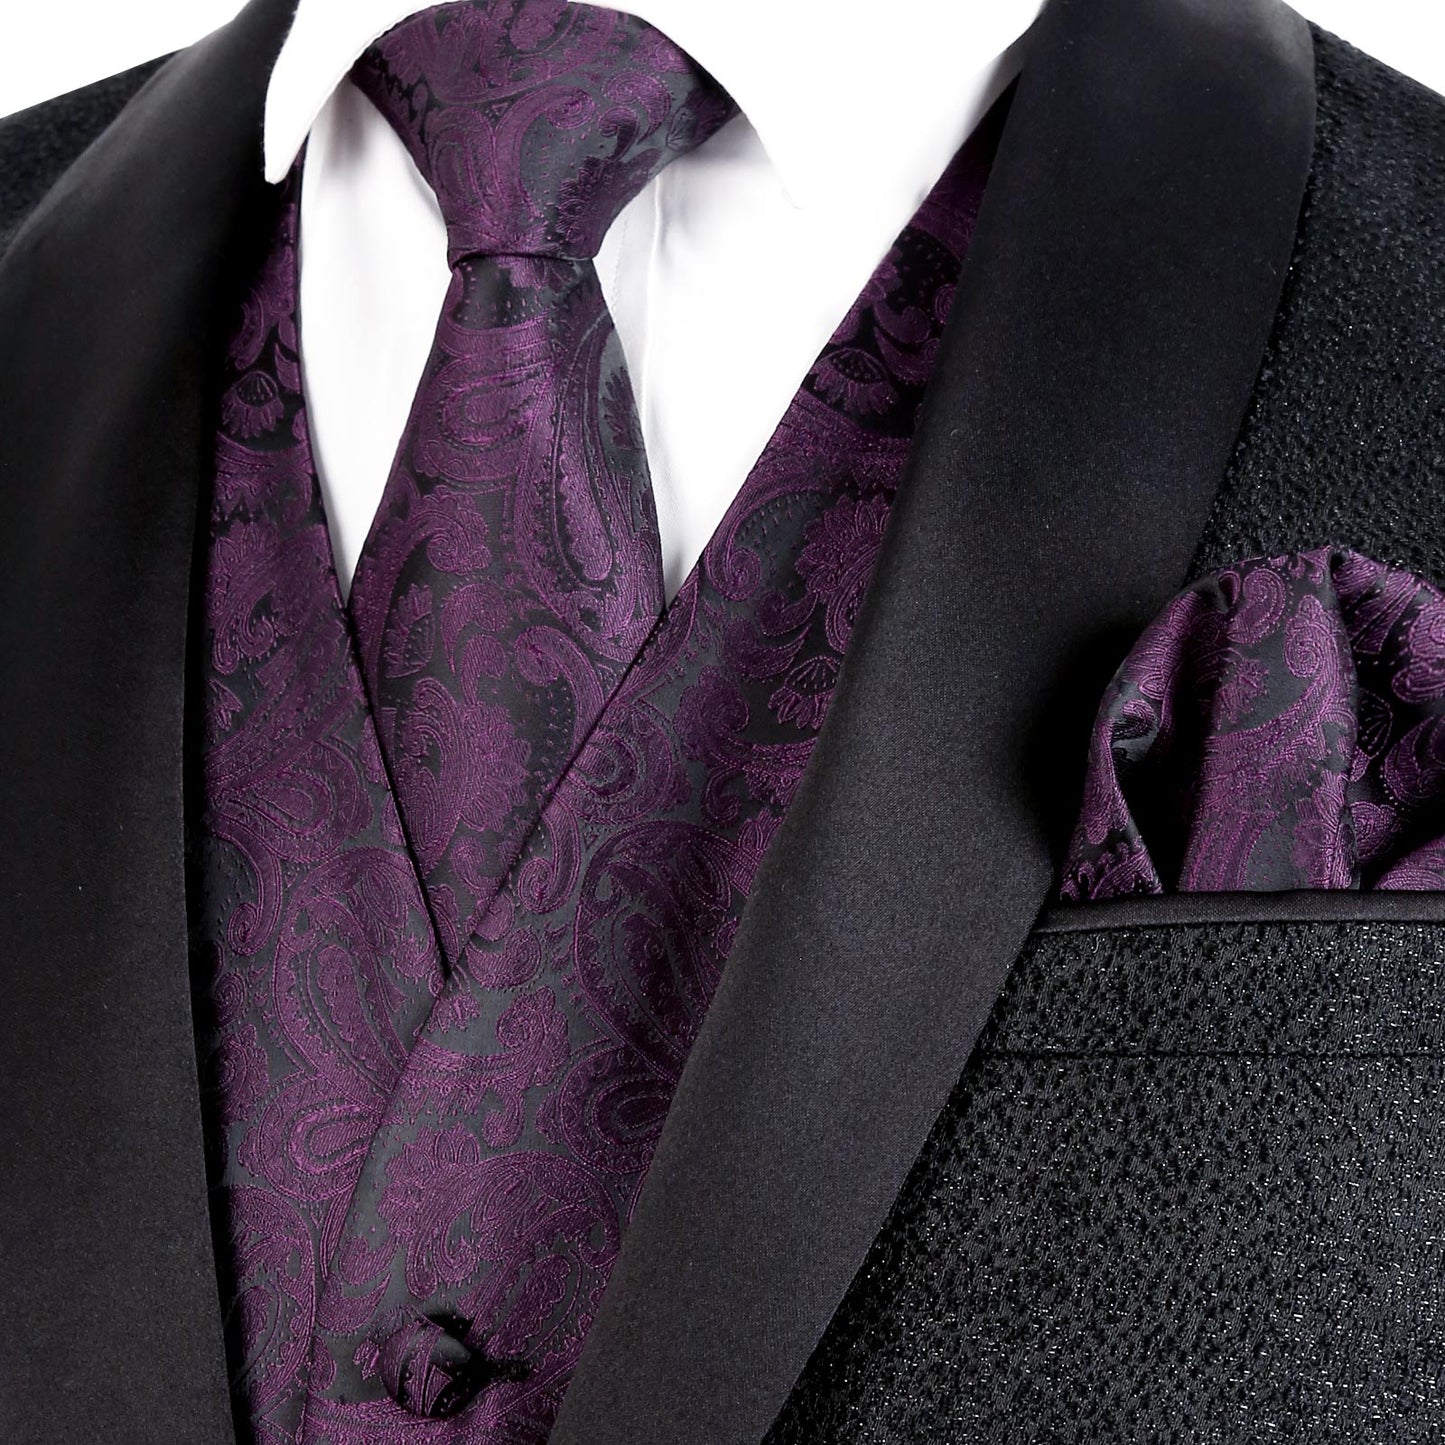 Men's Paisley Suit Vest, Self-tied Bow Tie, 3.35inch(8.5cm) Necktie and Pocket Square Set, 175-Eggplant